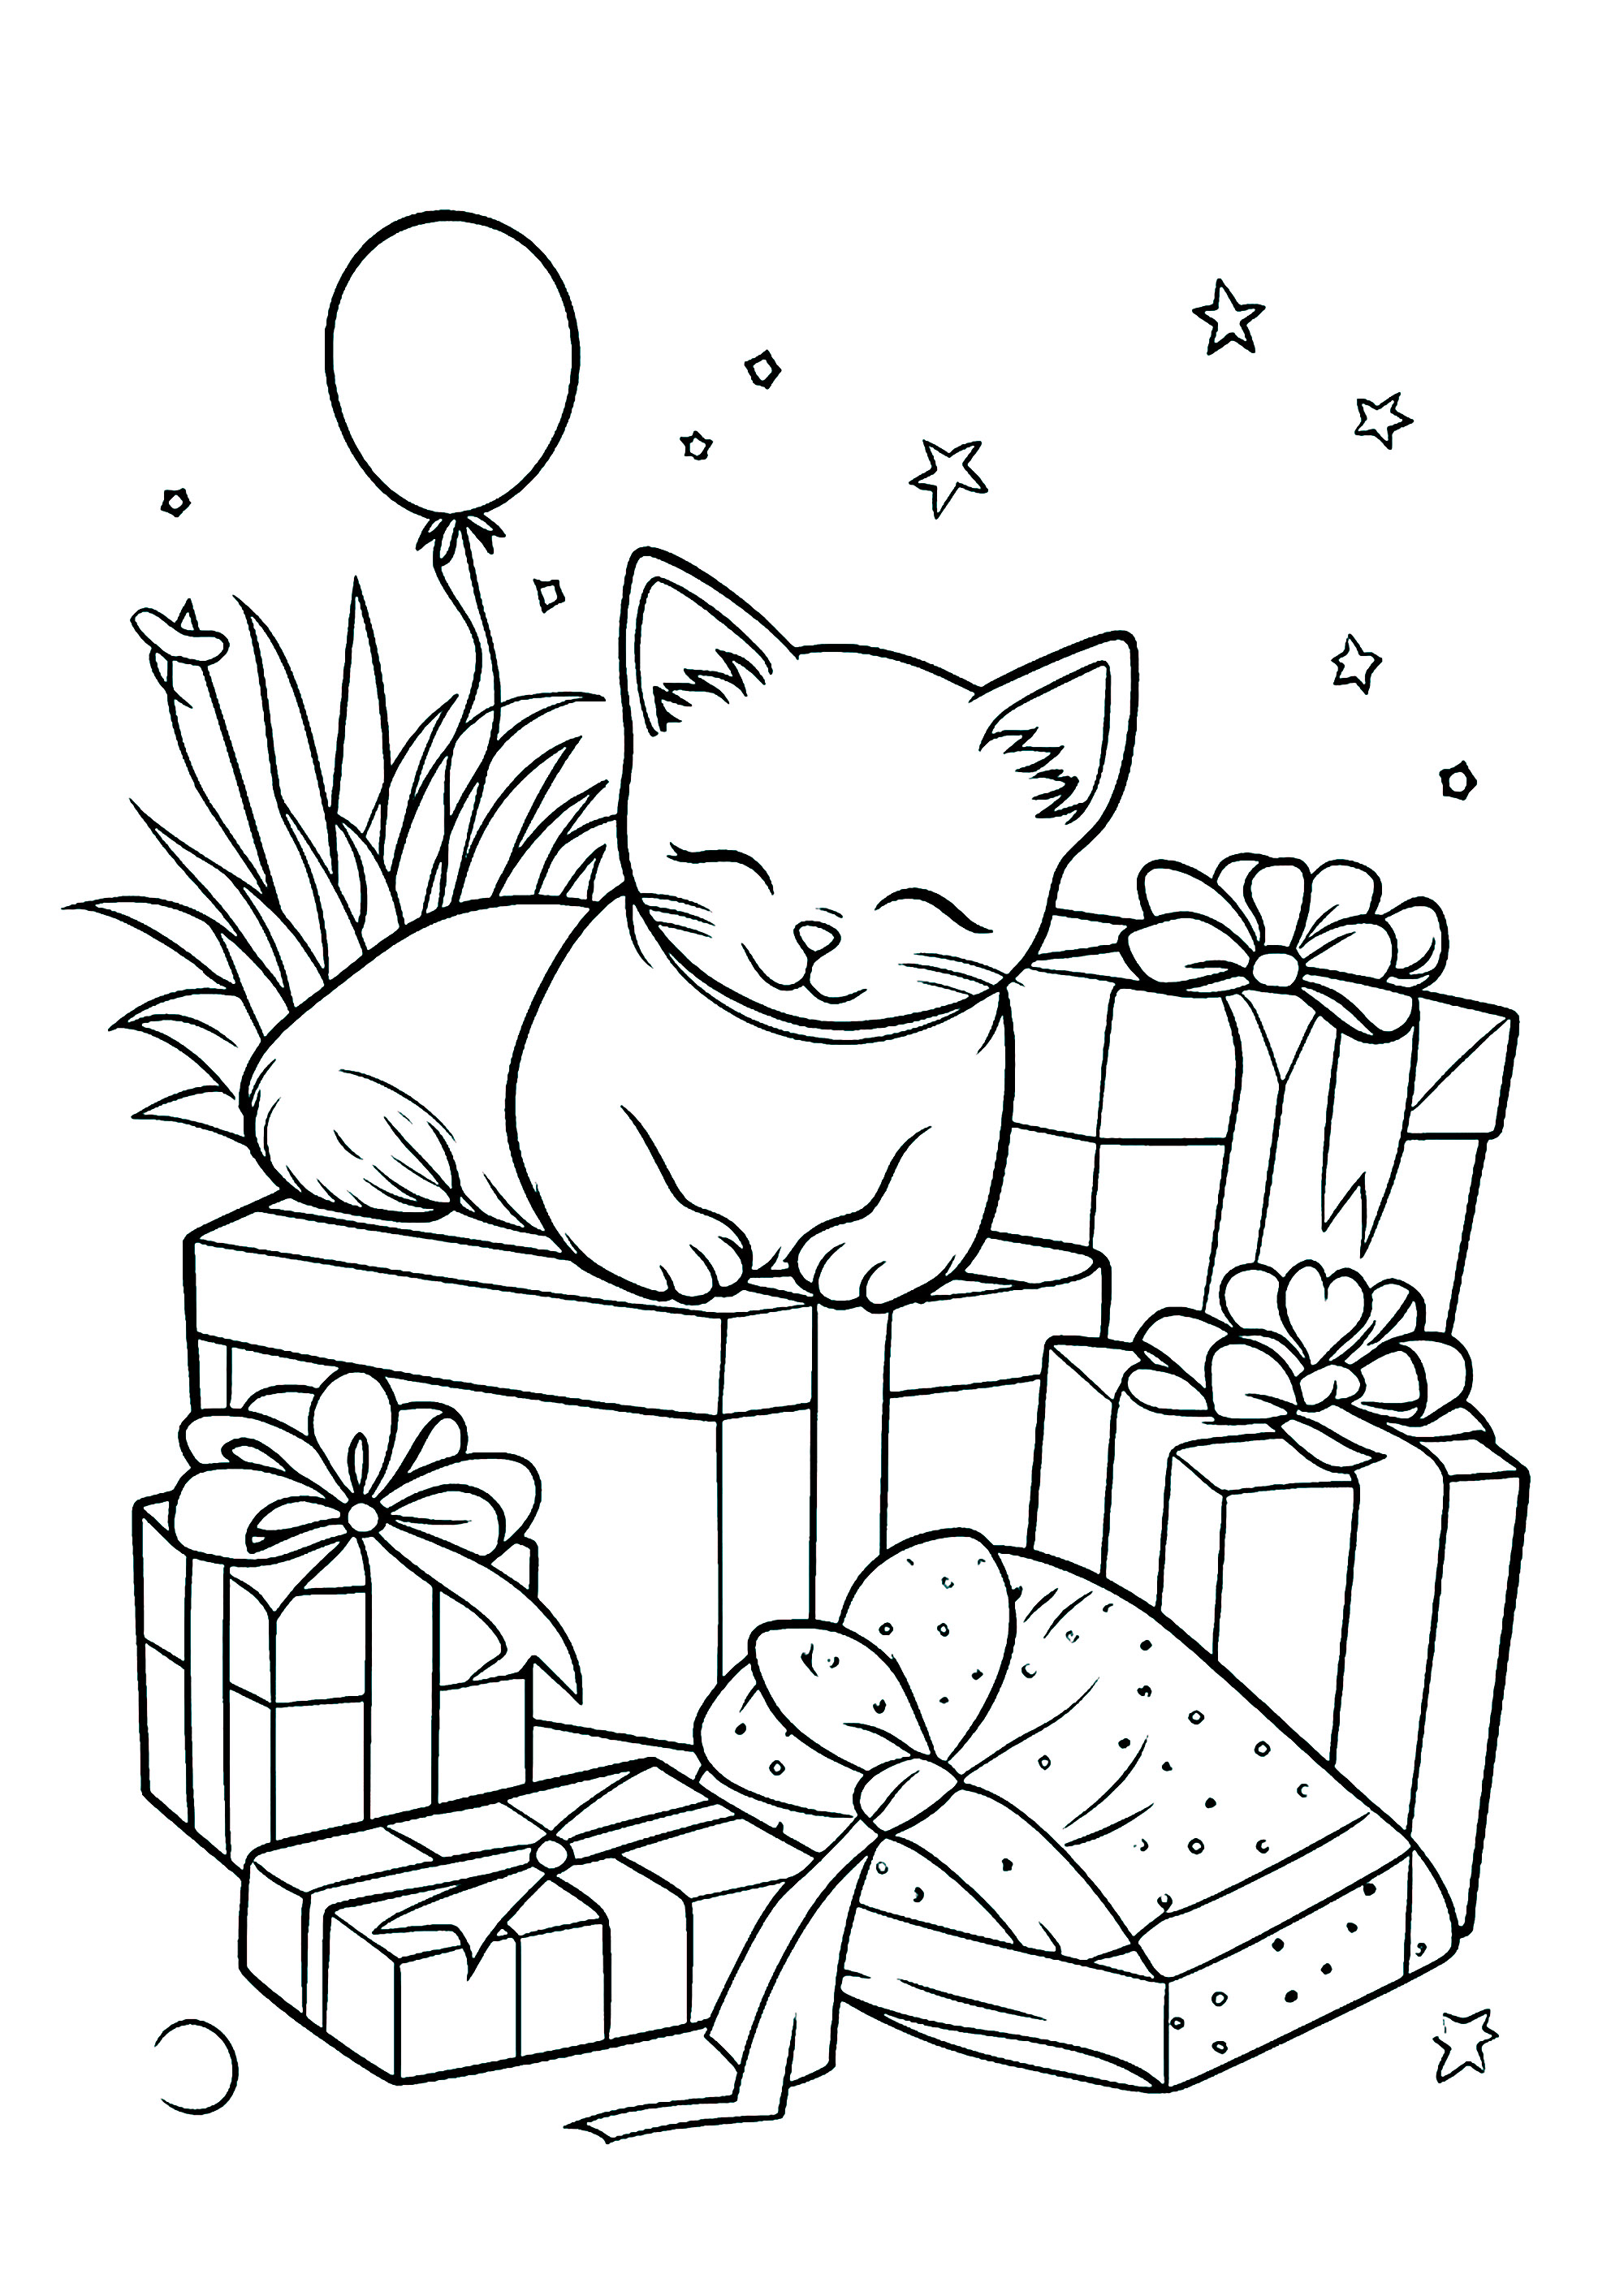 Un gato y muchos regalos envueltos